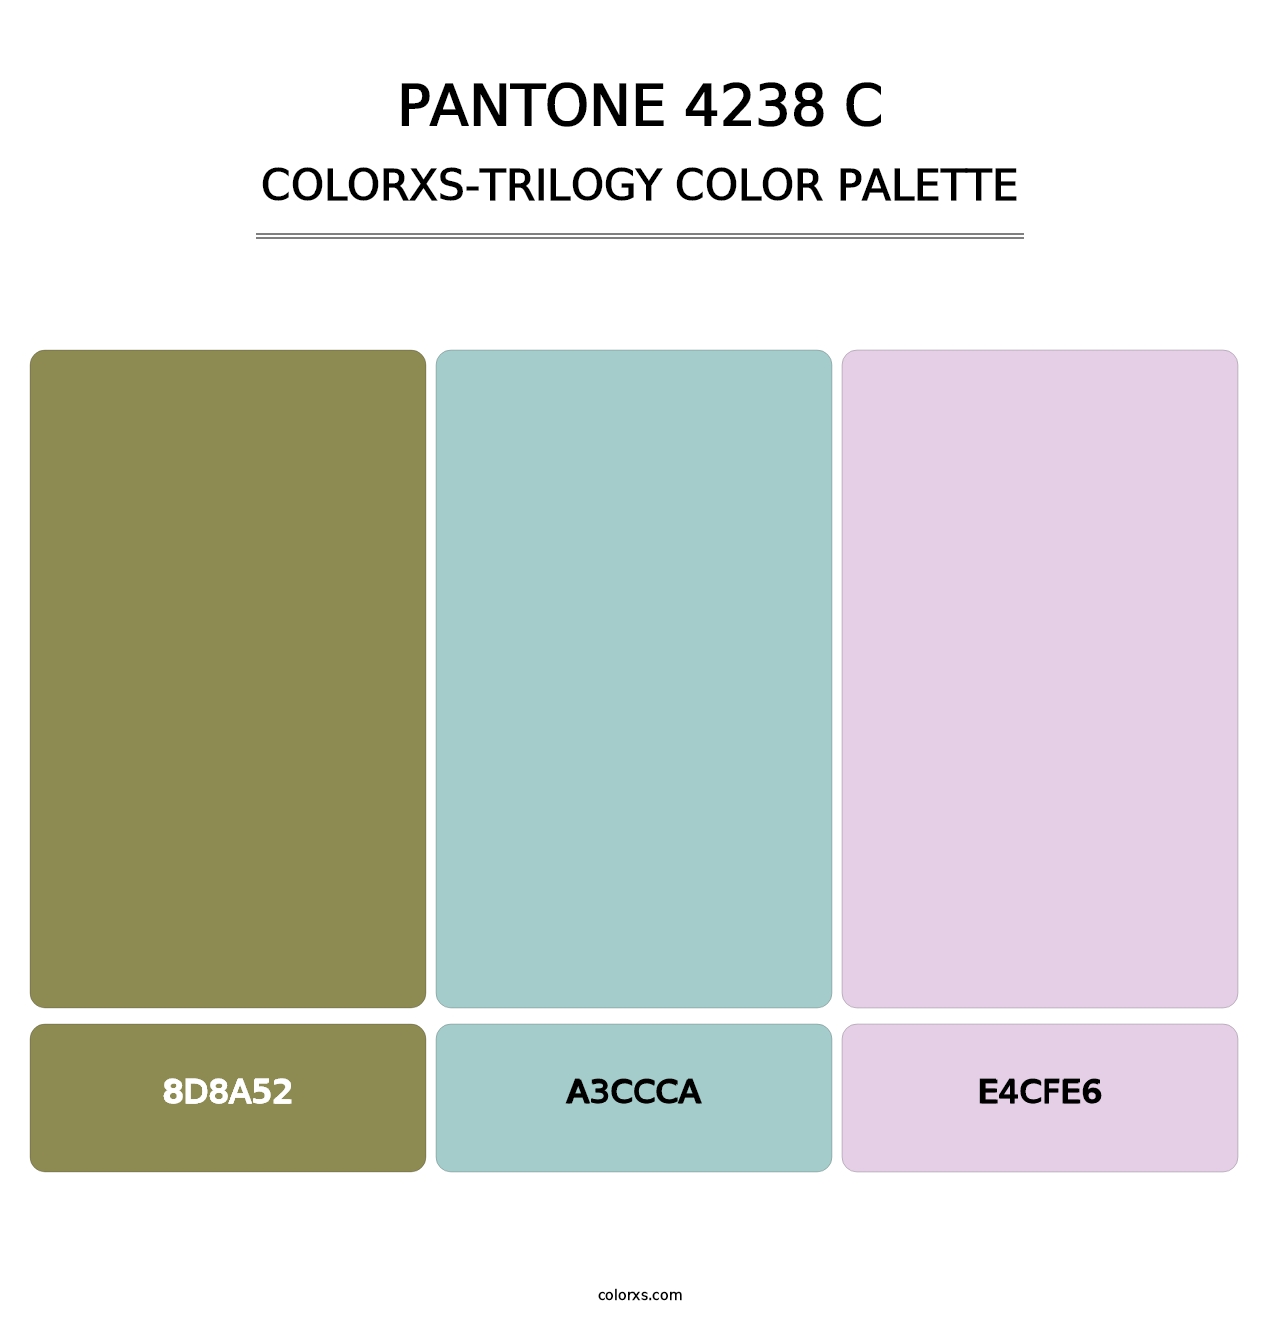 PANTONE 4238 C - Colorxs Trilogy Palette